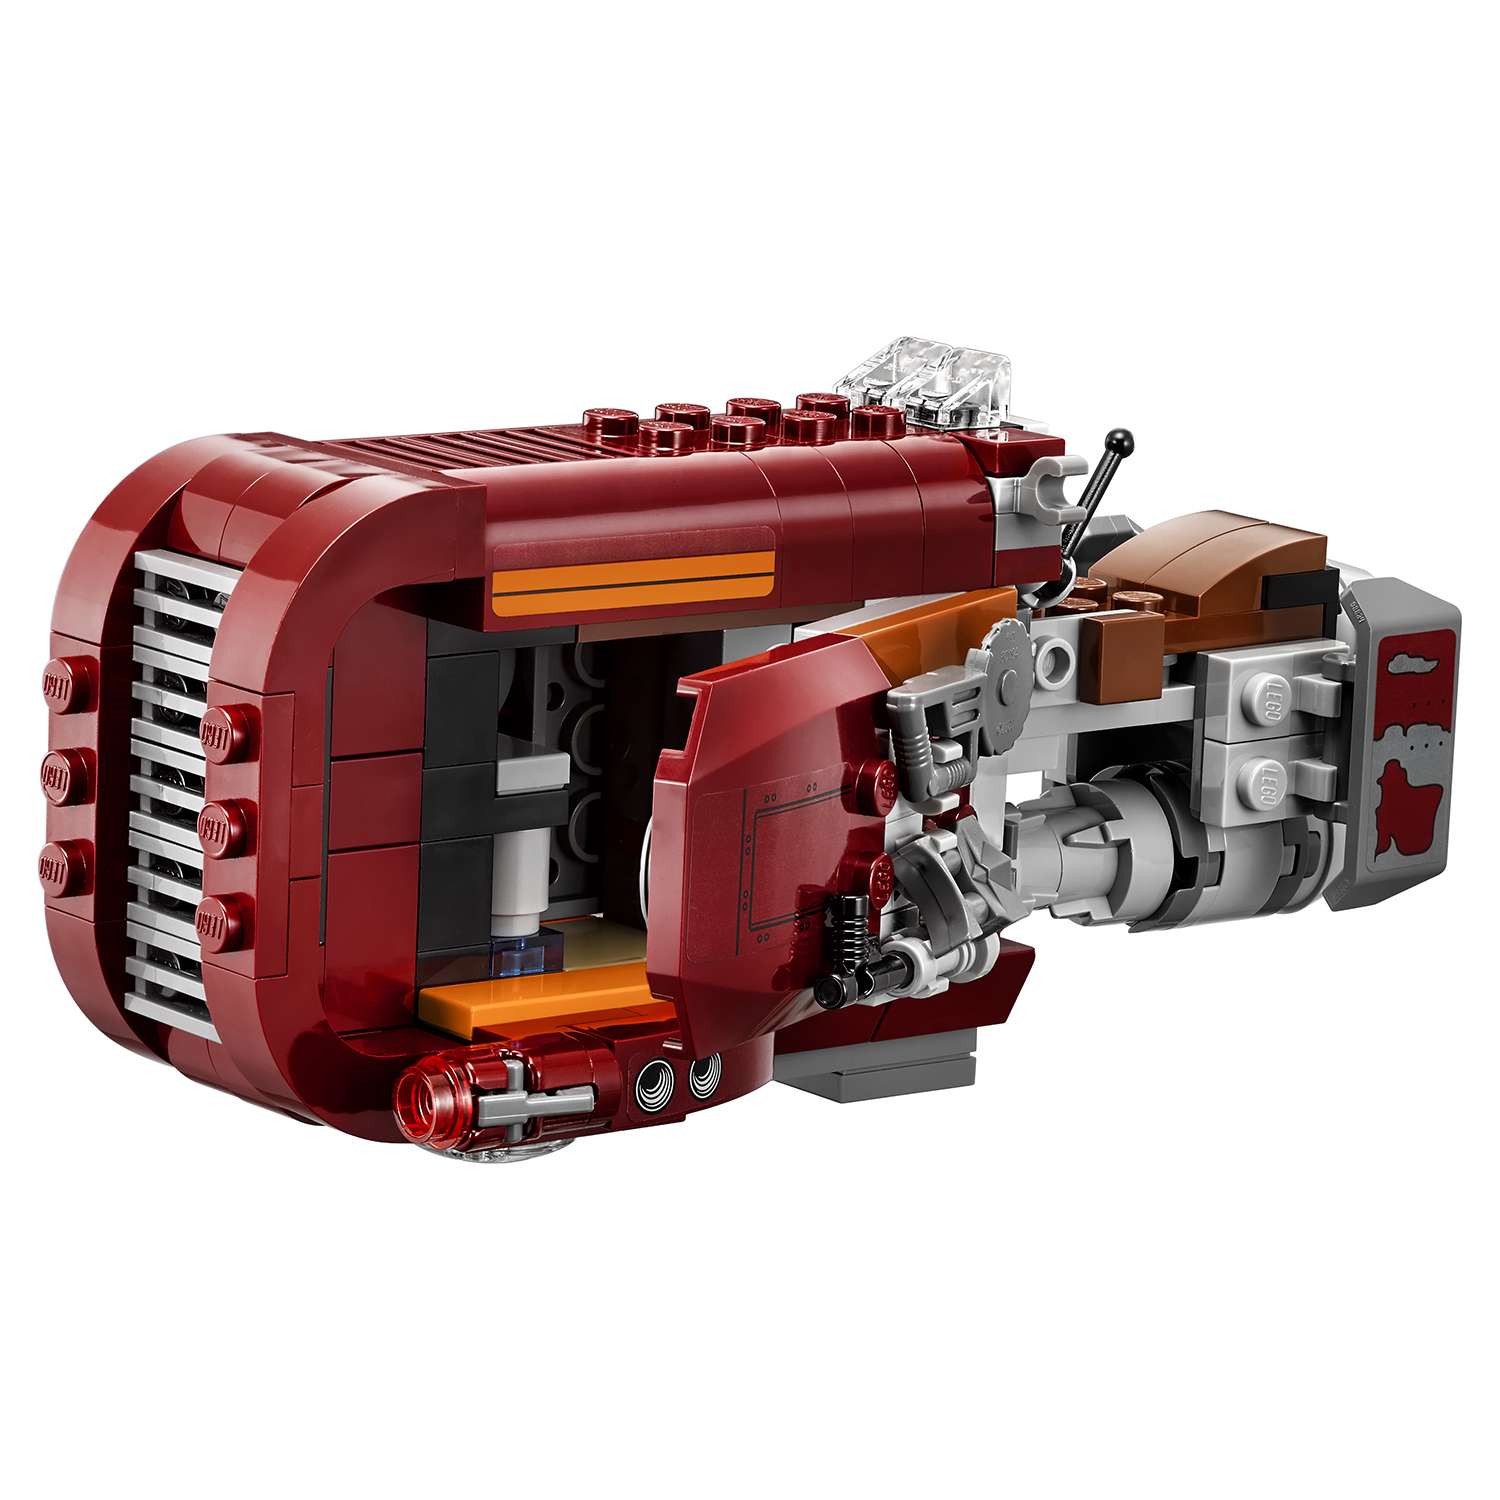 Конструктор LEGO Star Wars TM Спидер Рей (Rey's Speeder™) (75099) - фото 5